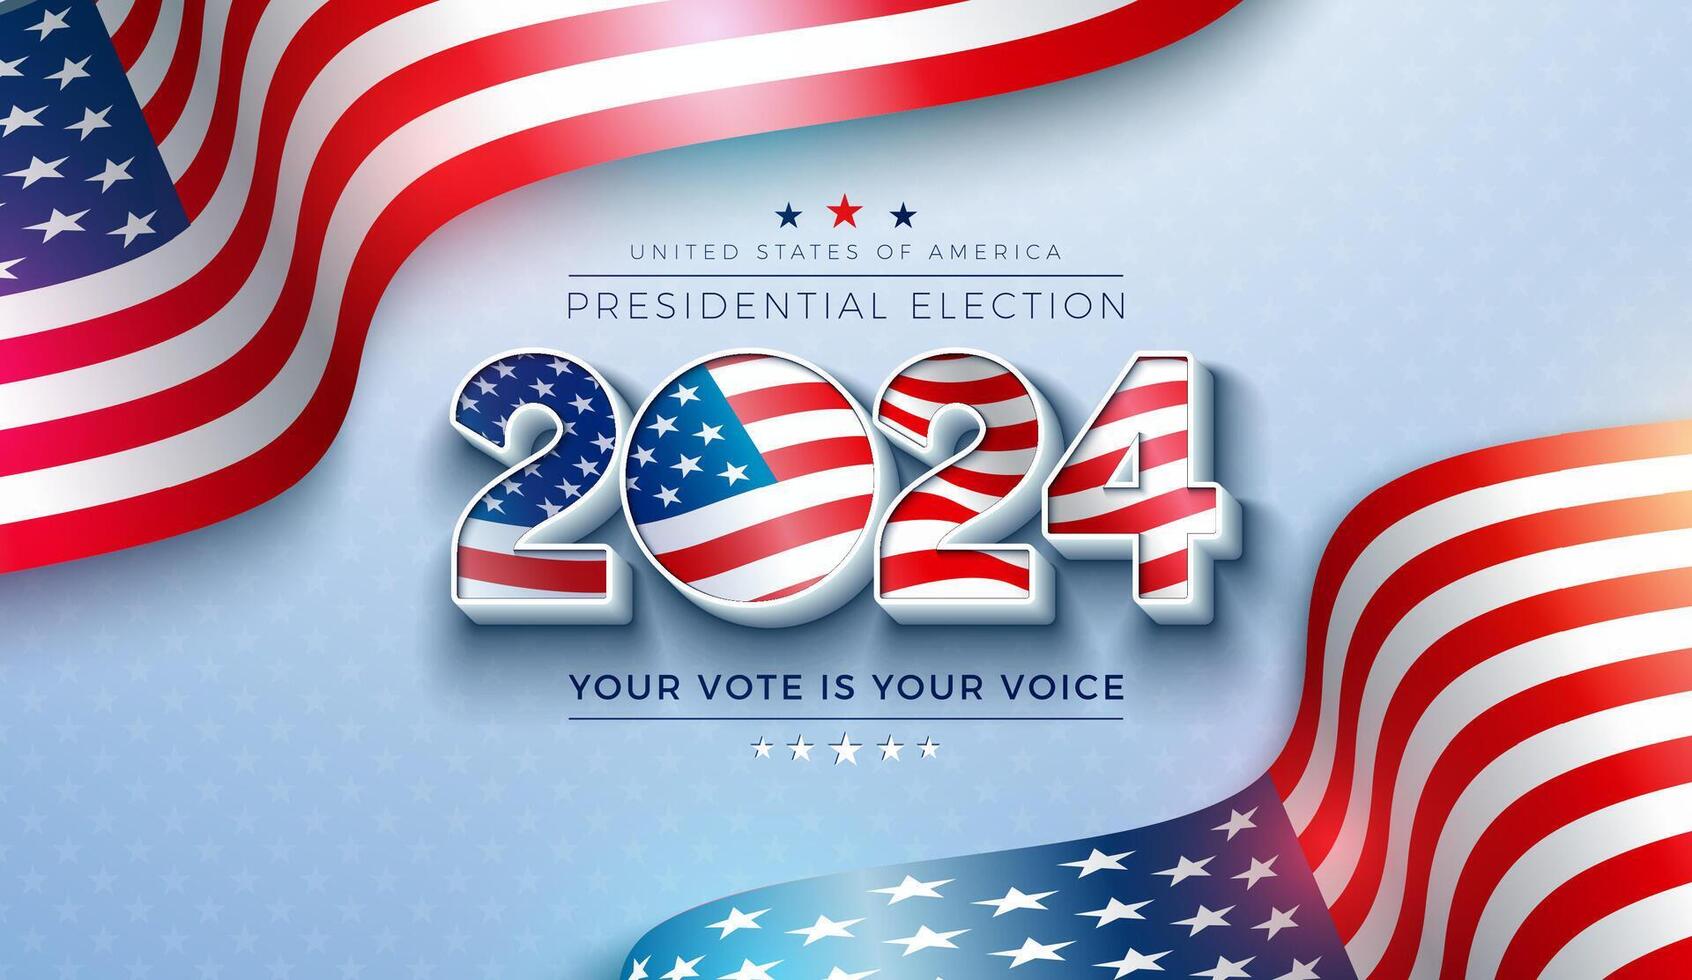 USA 2024 president- val baner illustration med amerikan flagga i text märka på ljus bakgrund. rösta dag, november 5. förenad stater val röstning design med typografi för affisch vektor